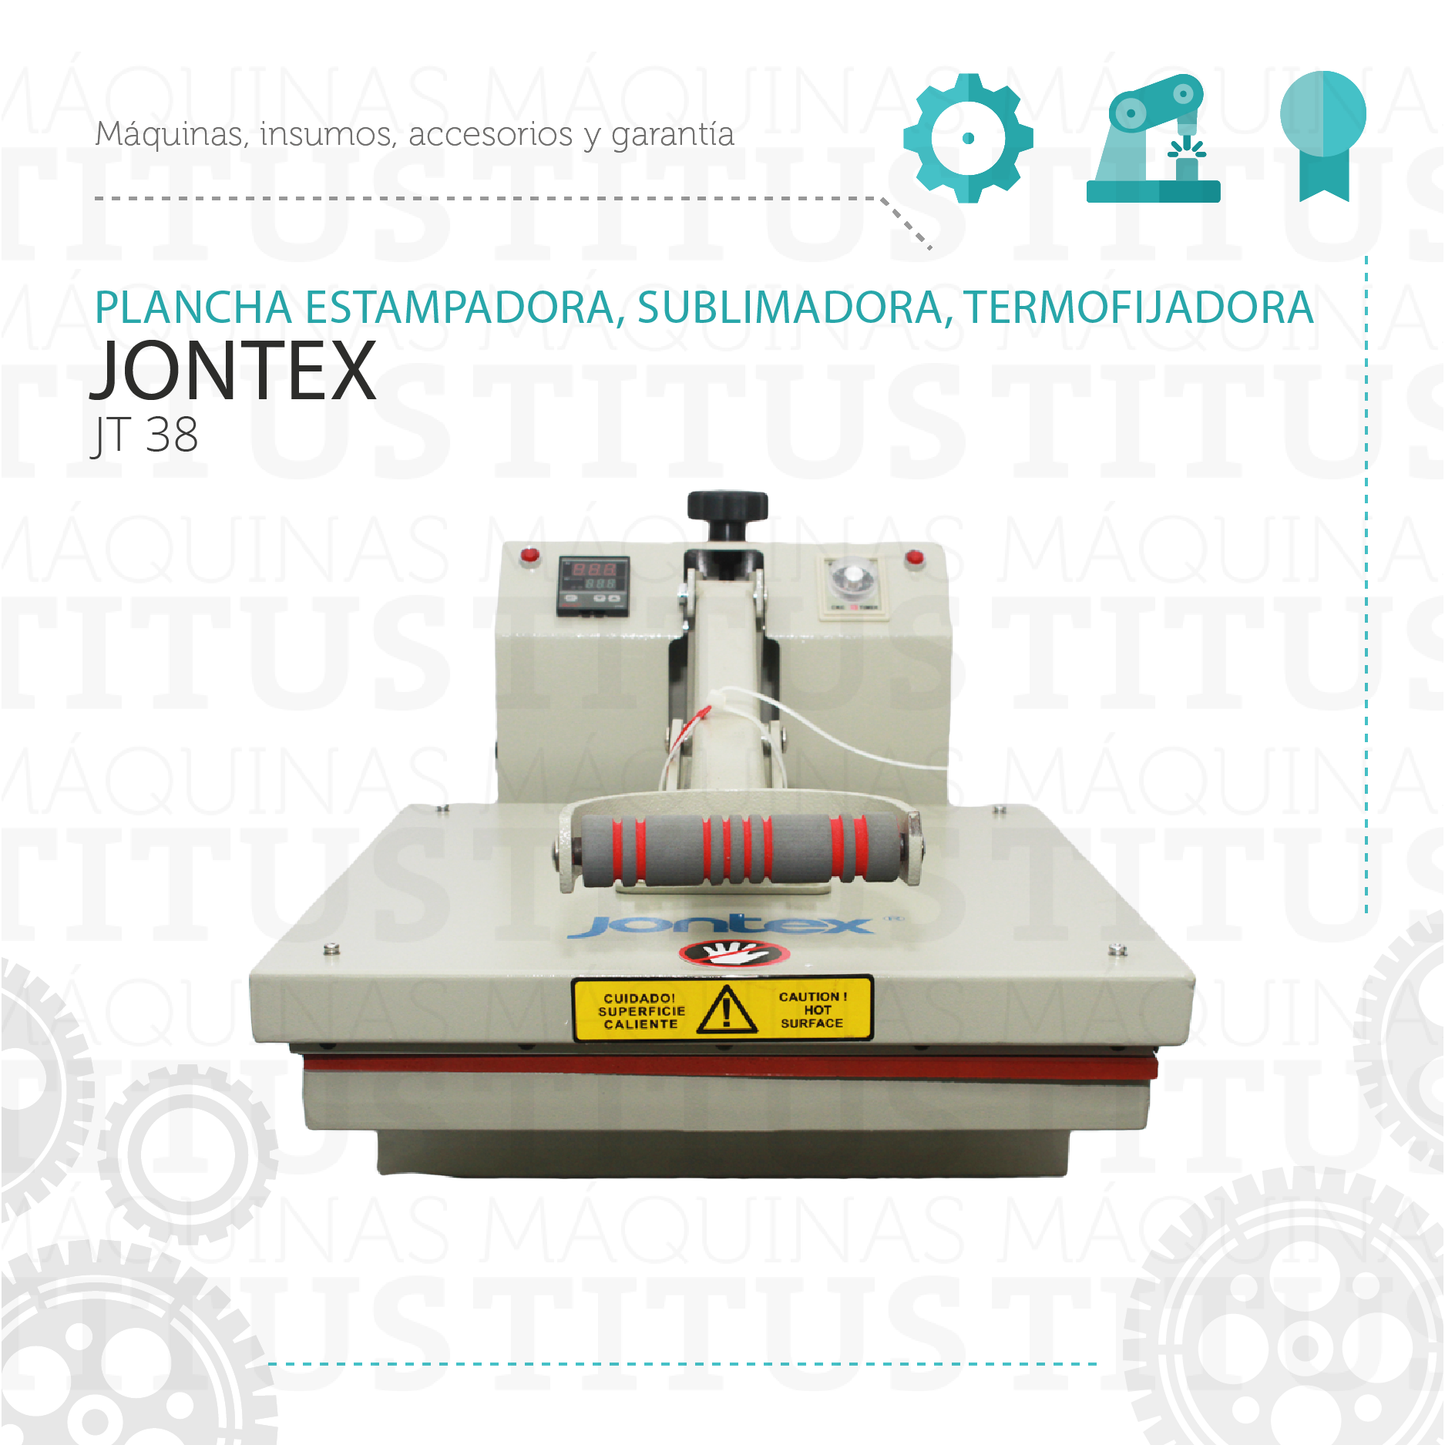 Plancha Estampadora Sublimadora Termofijadora Jontex JT 38 - Commercio